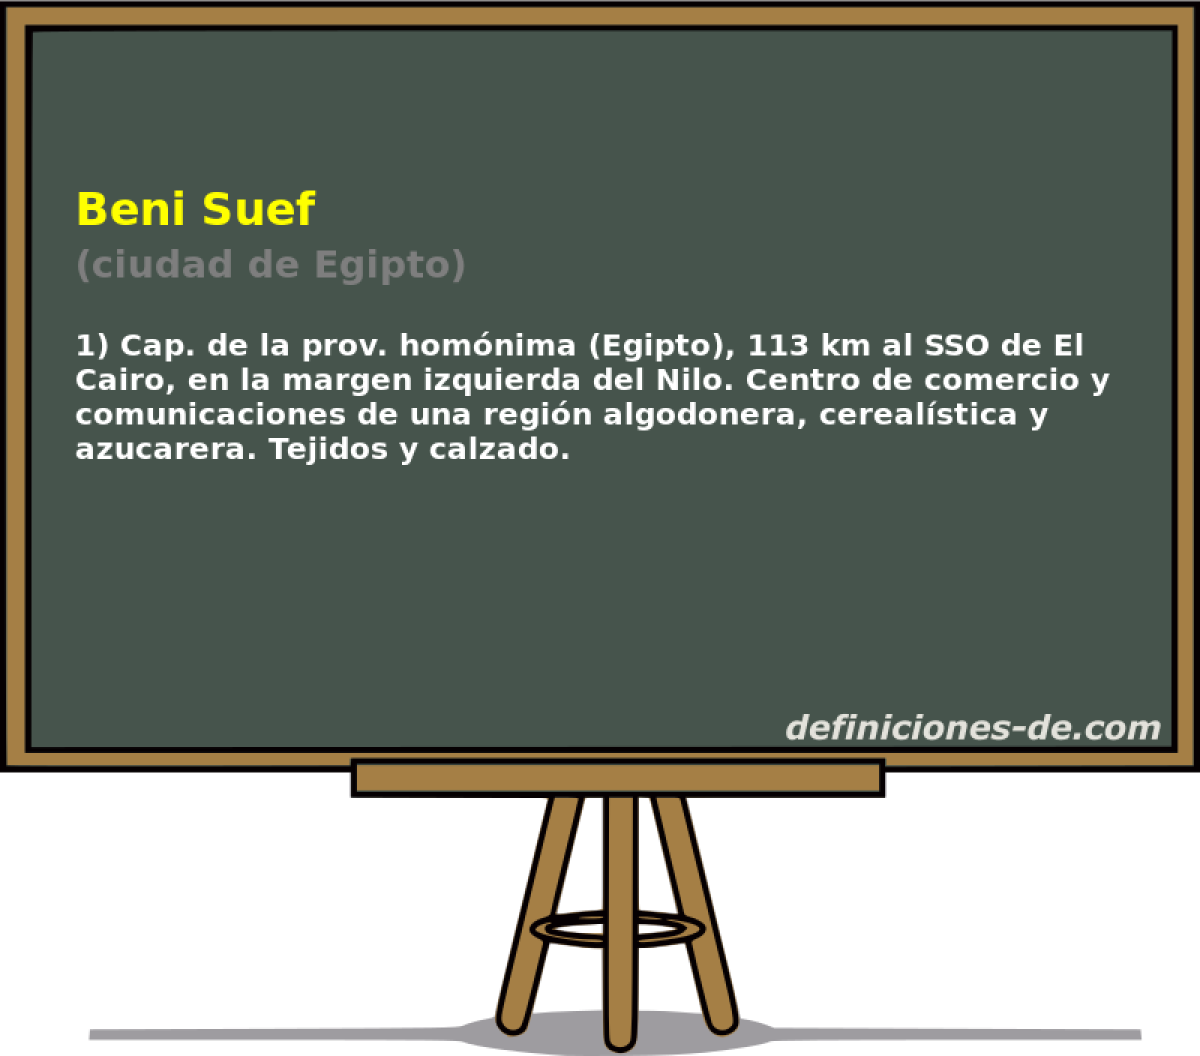 Beni Suef (ciudad de Egipto)